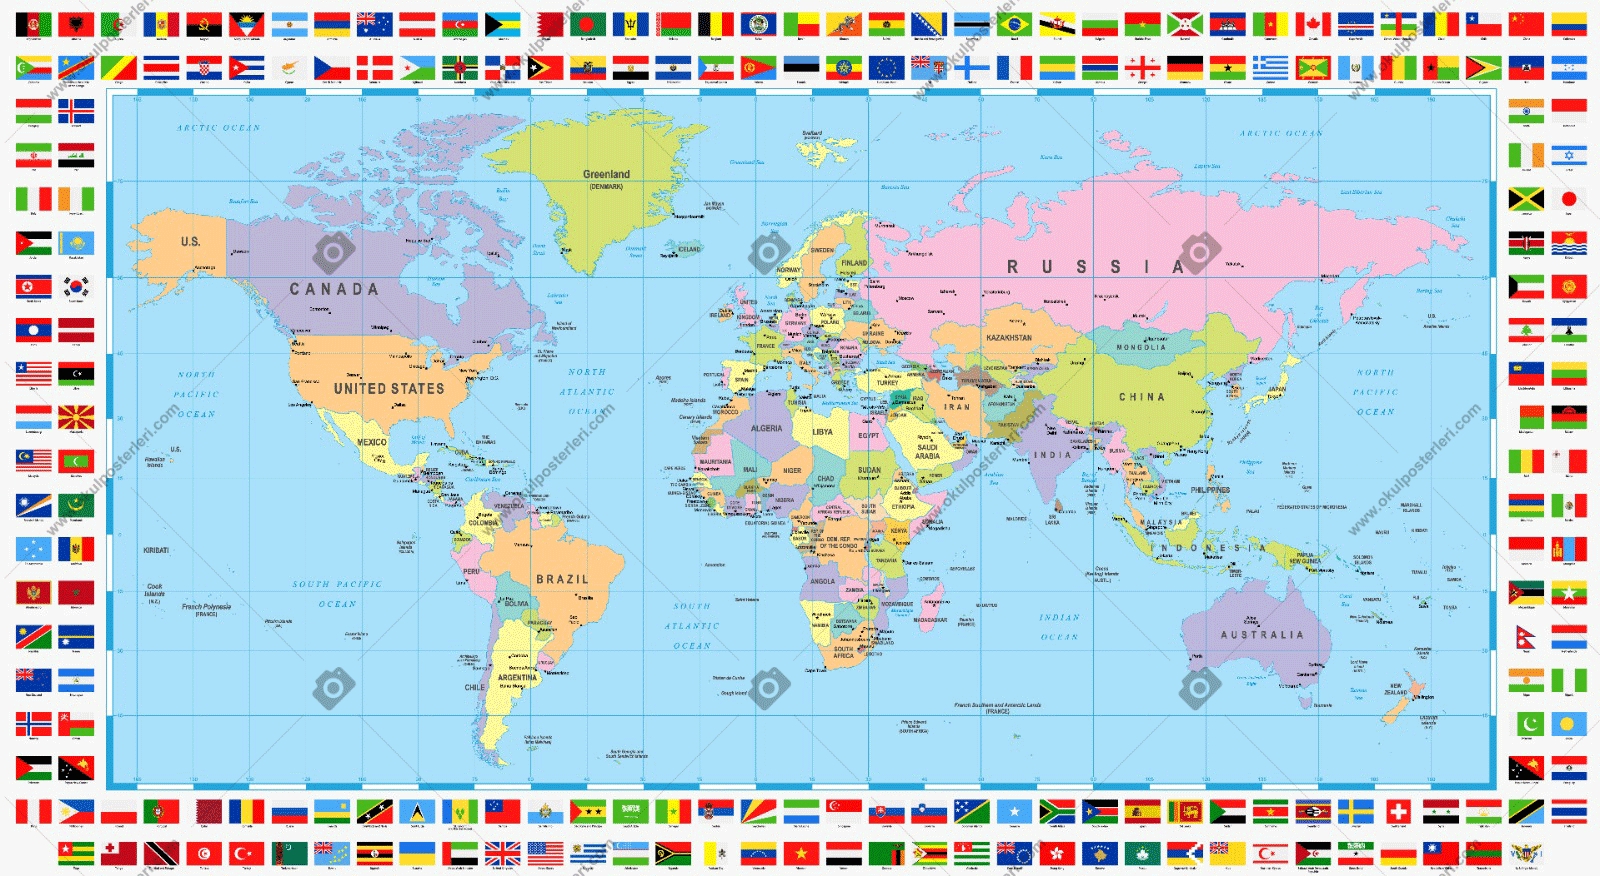 Dünya Siyasi Haritası 4 Okul Posteri